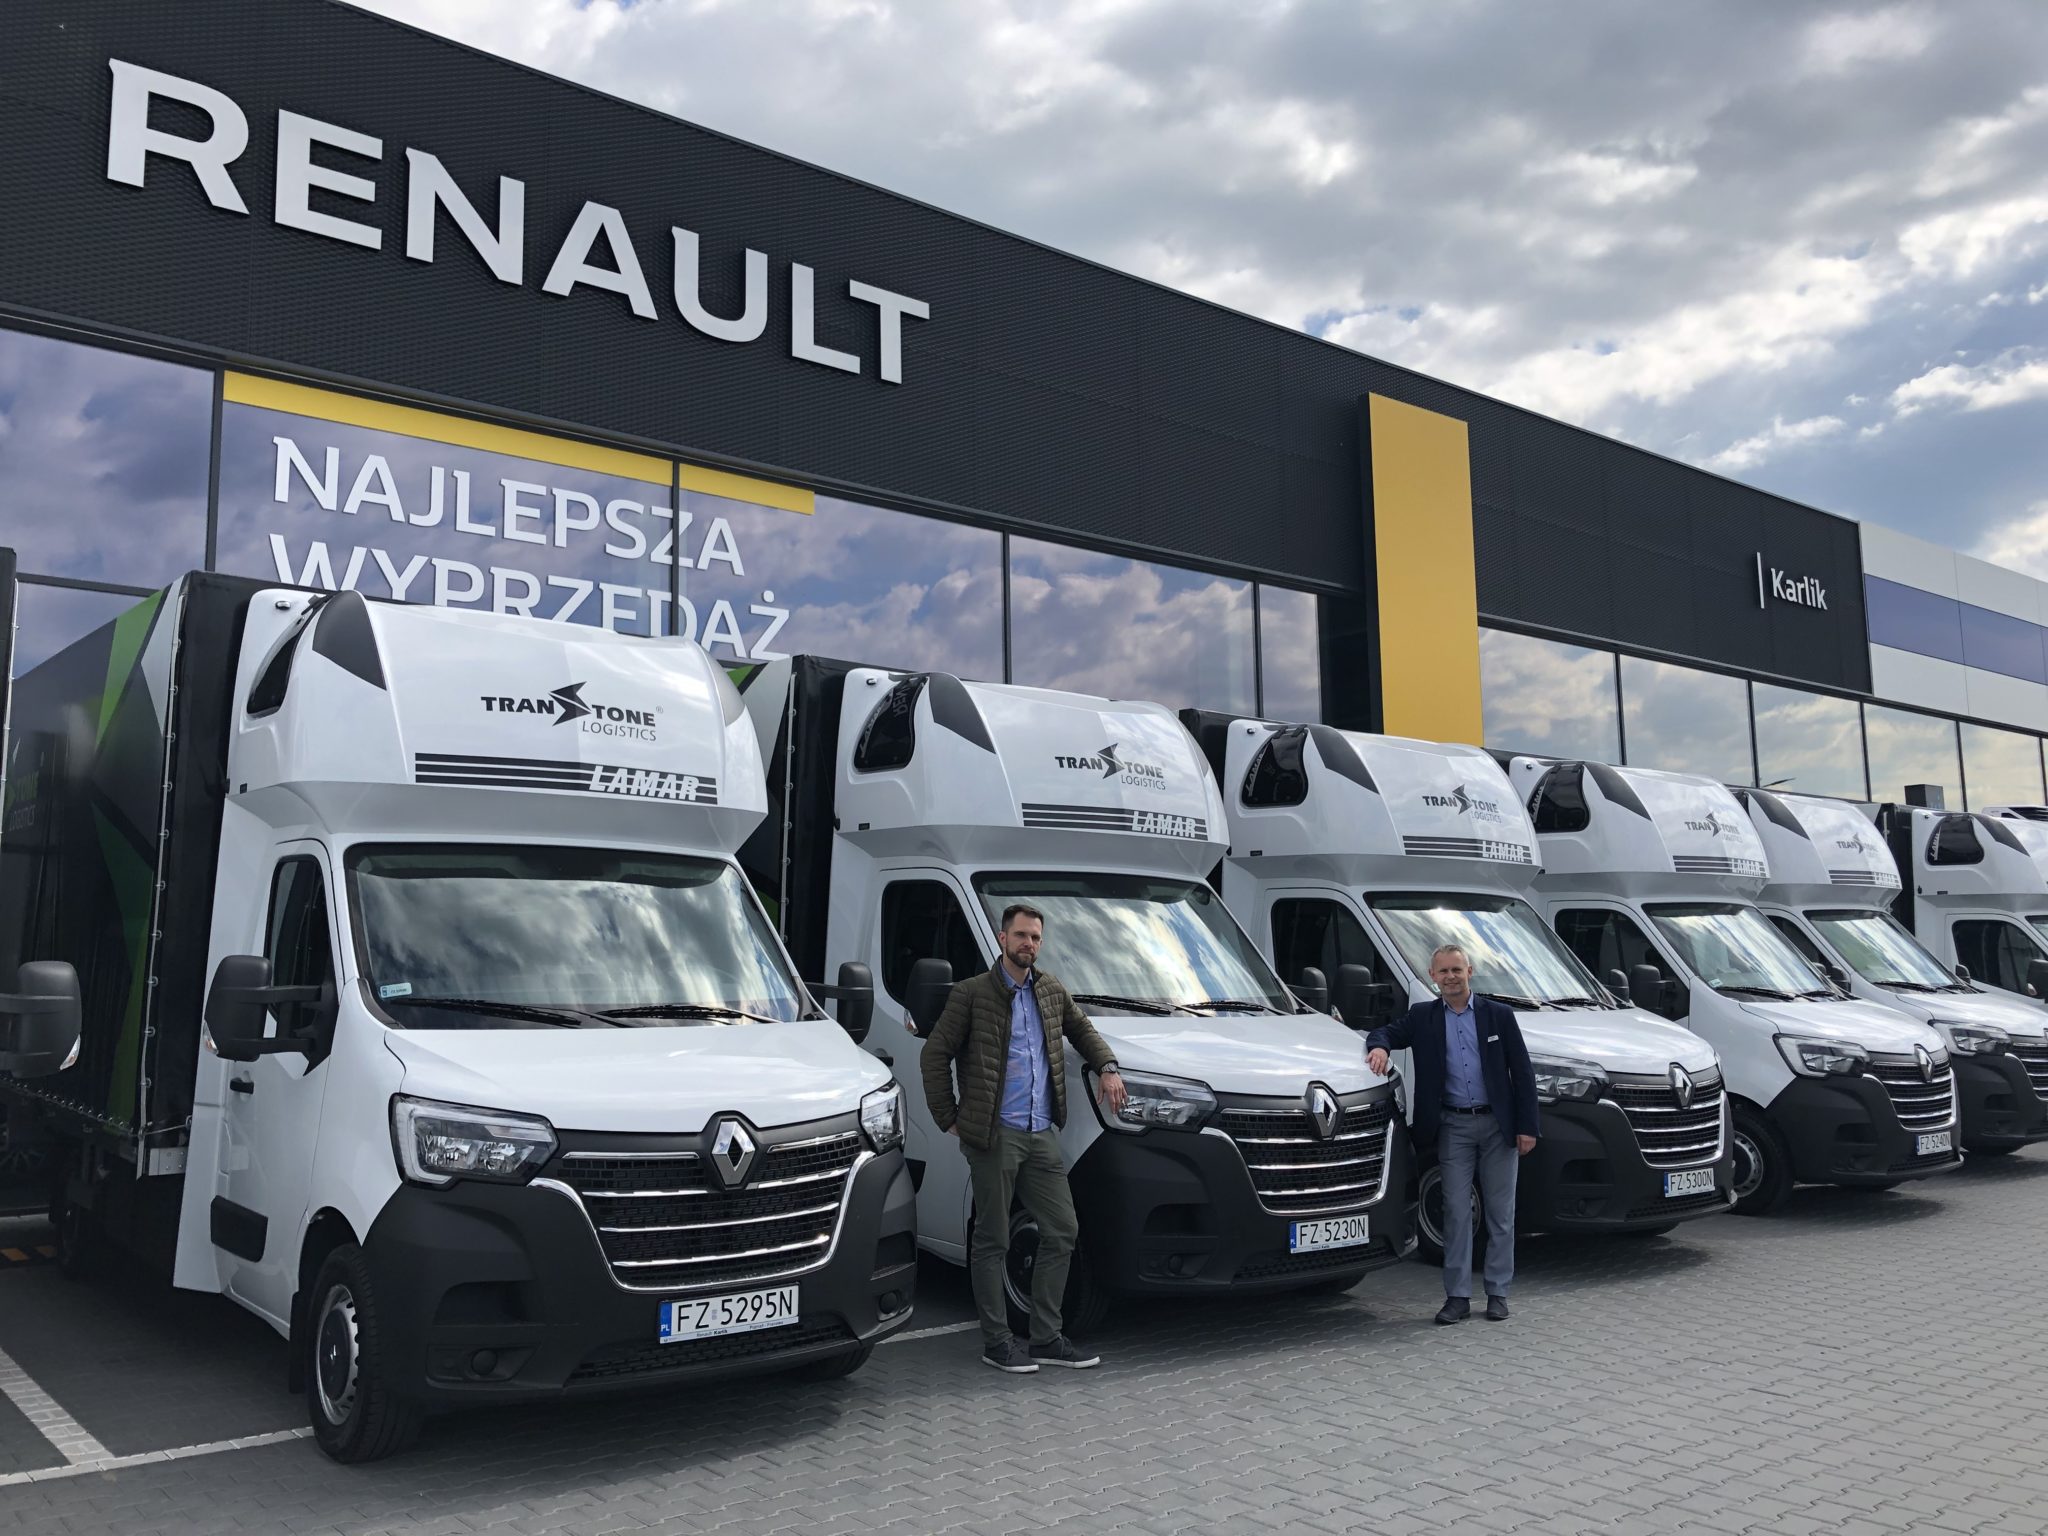 Transtone Logistics x Renault Karlik. Karlik